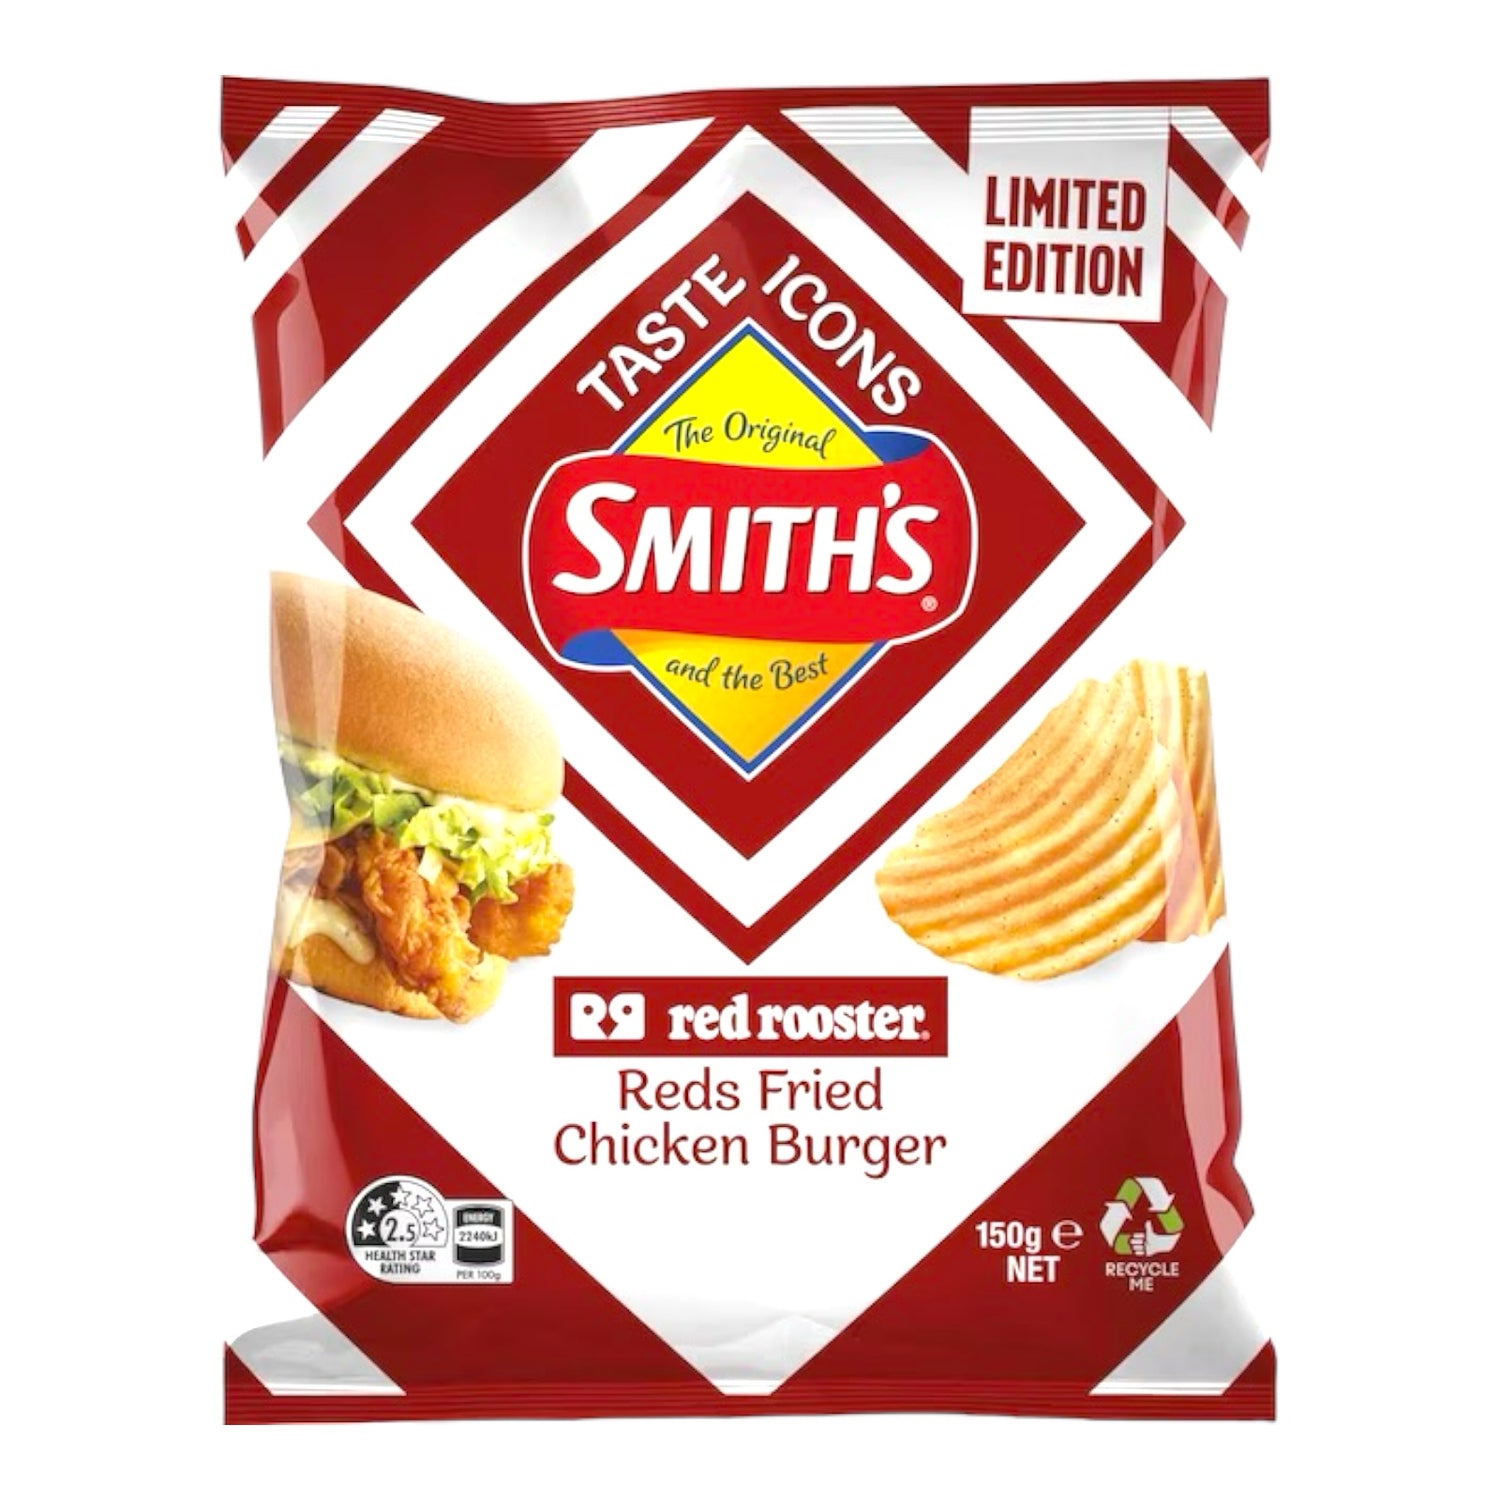 Smith's Reds Fried Chicken Burger 150g (Australia)